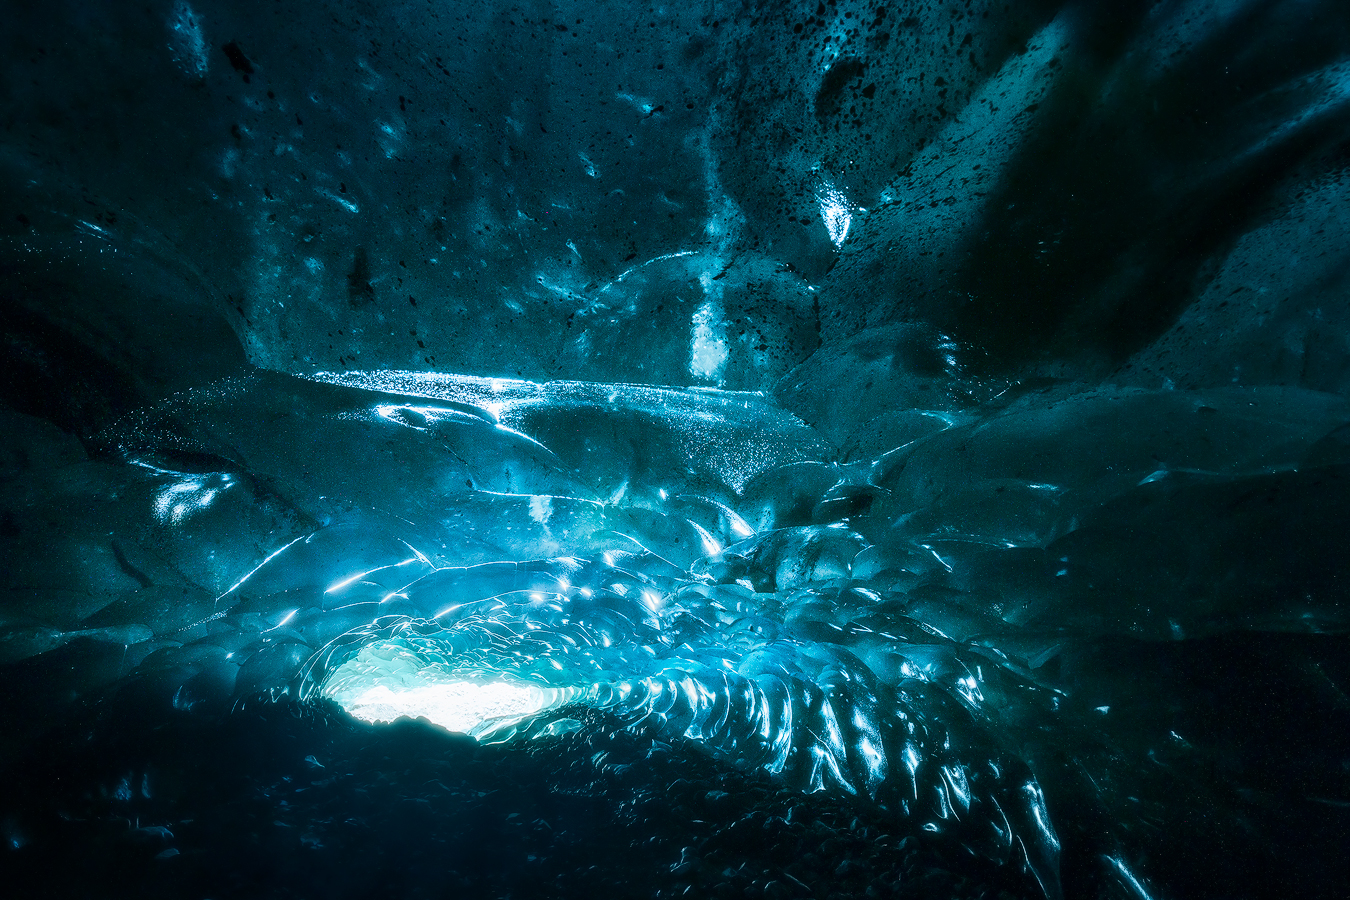 ภาพจากด้านในของถ้ำน้ำแข็งในชายฝั่งทางใต้ของประเทศไอซ์แลนด์